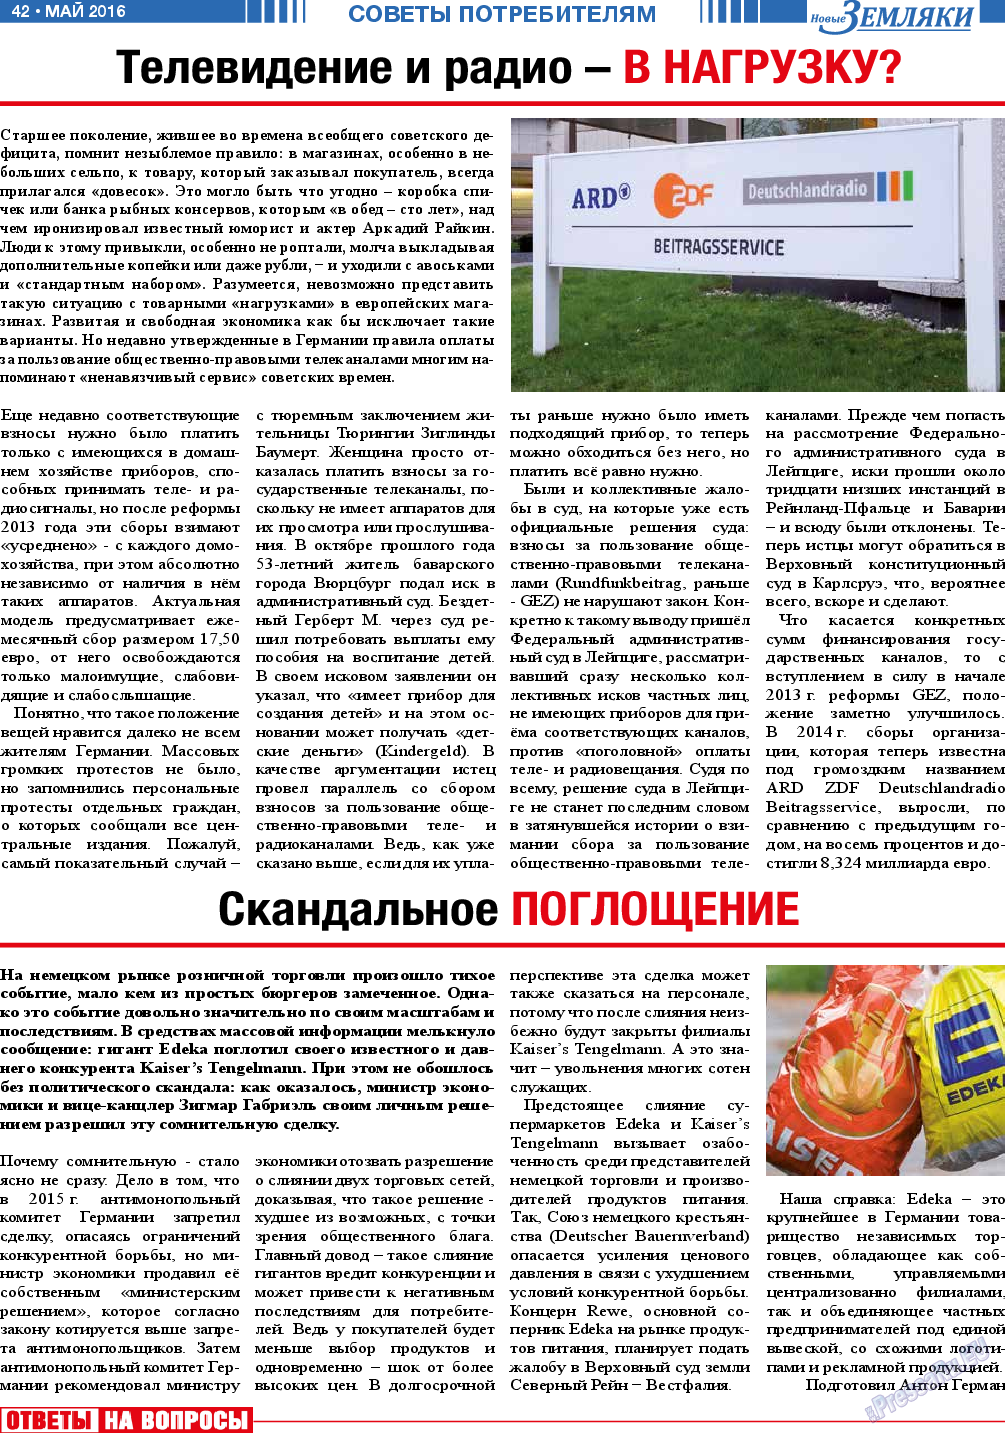 Новые Земляки (газета). 2016 год, номер 5, стр. 42